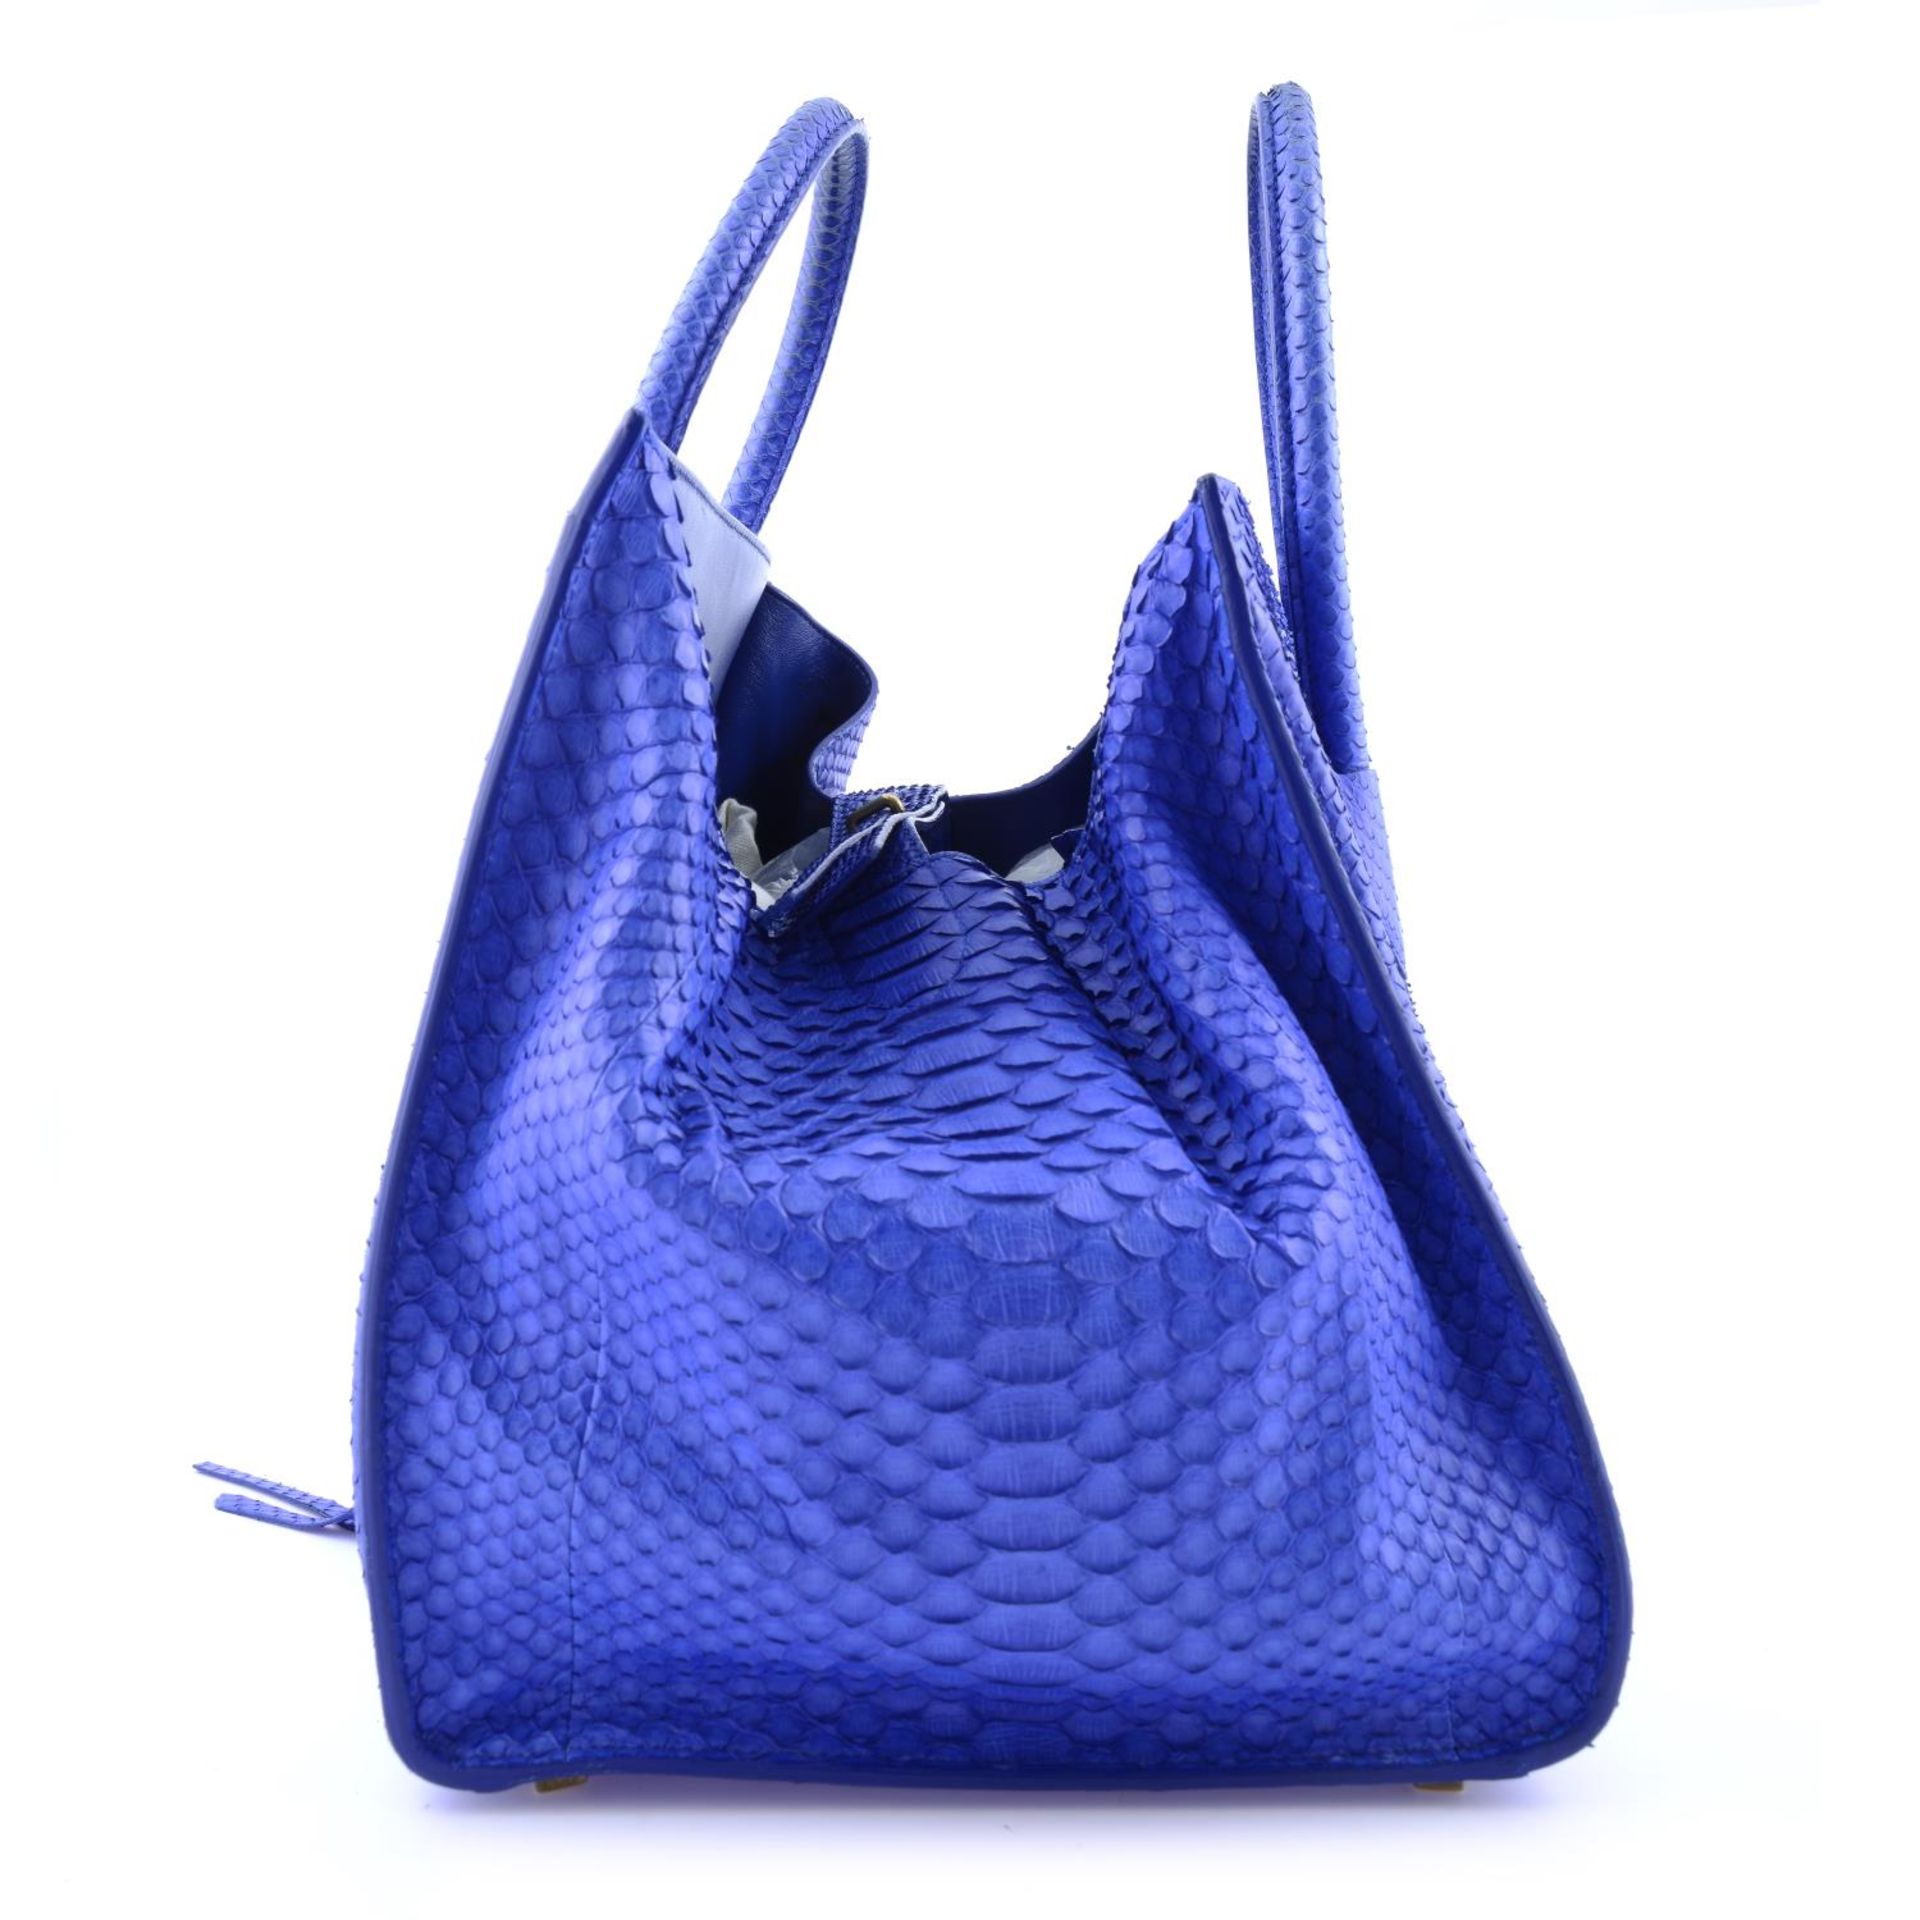 CÉLINE - a blue python skin Phantom handbag. - Image 3 of 9